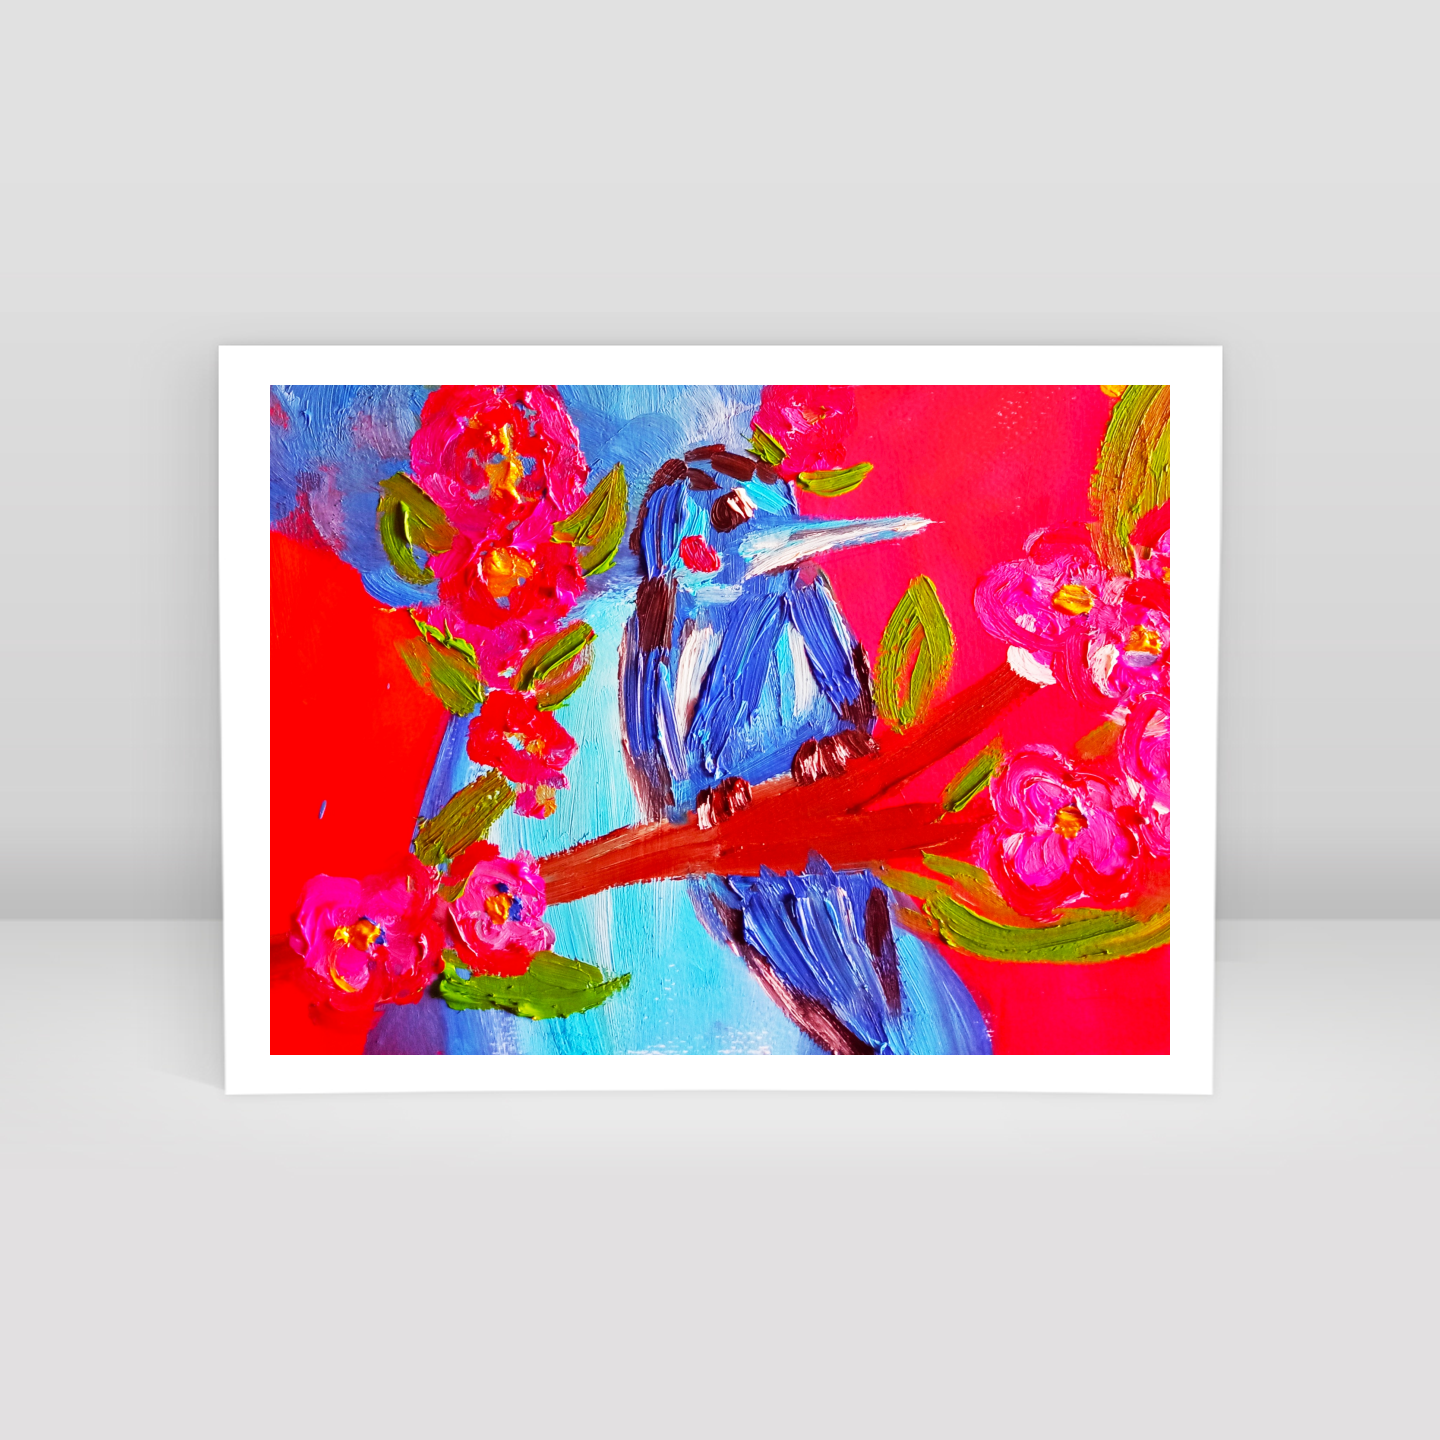 Hüzünkovan kuşu - Art Print